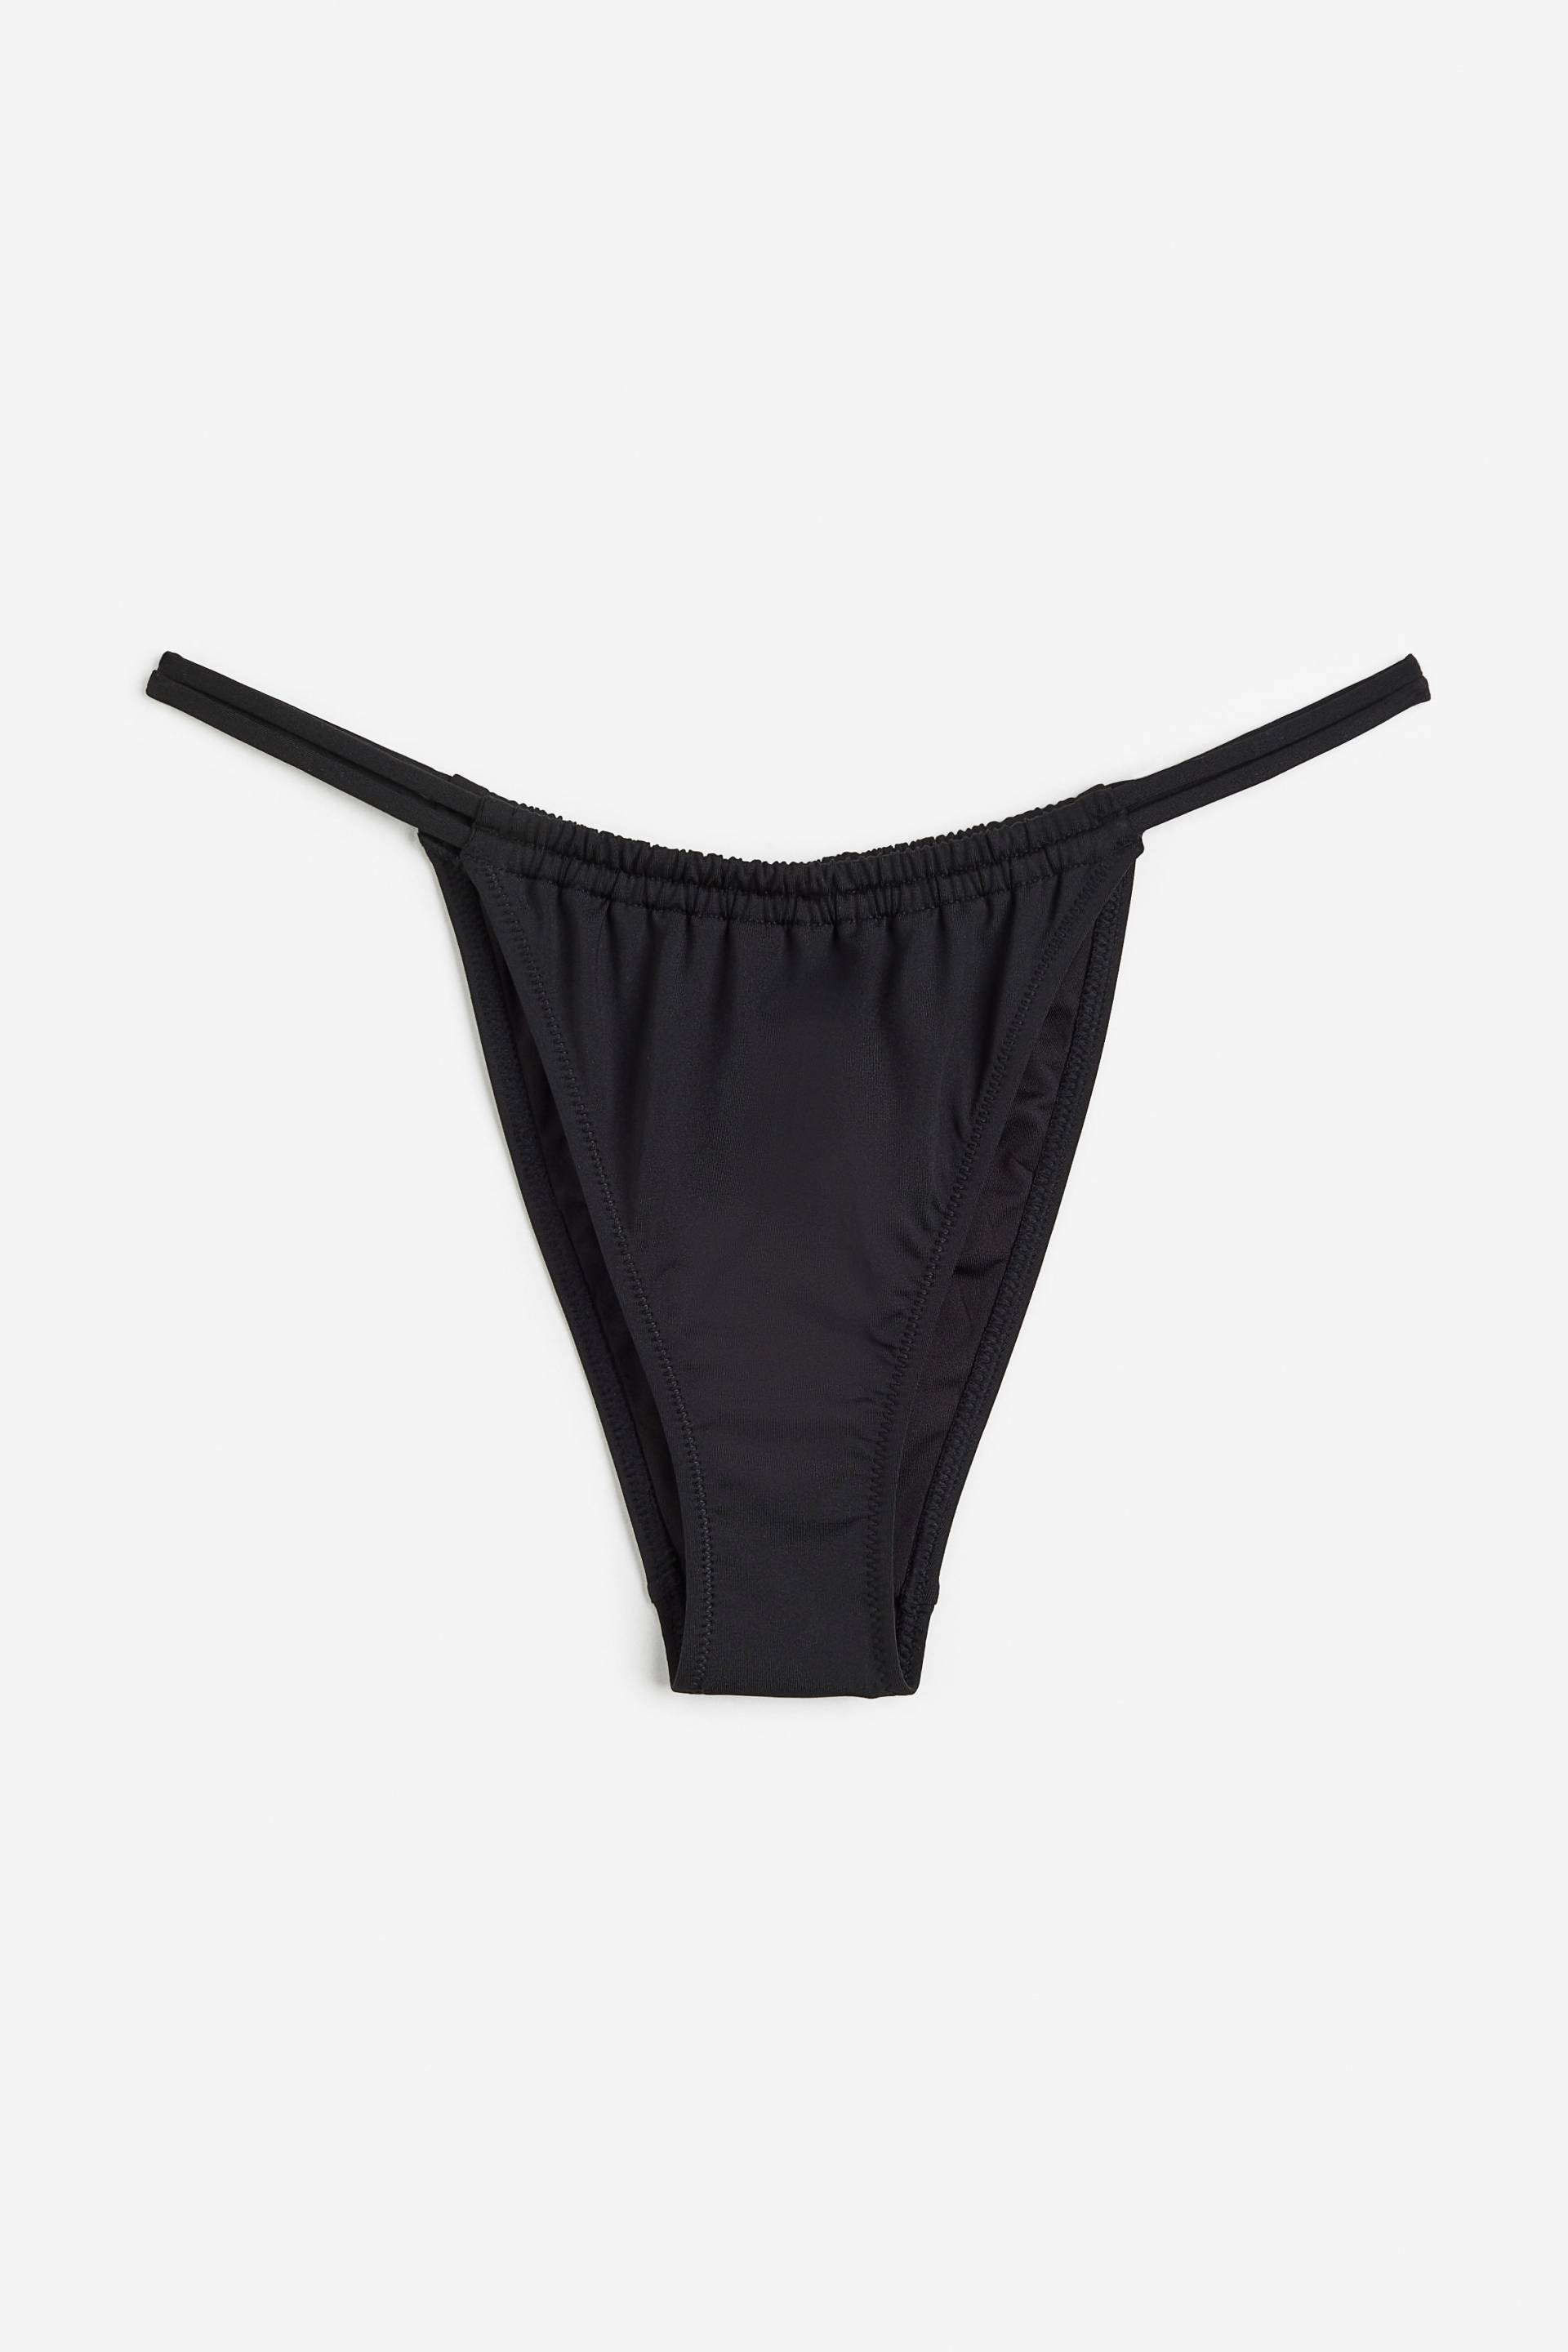 H&M Bikinihose Tanga Schwarz, Bikini-Unterteil in Größe 50. Farbe: Black von H&M